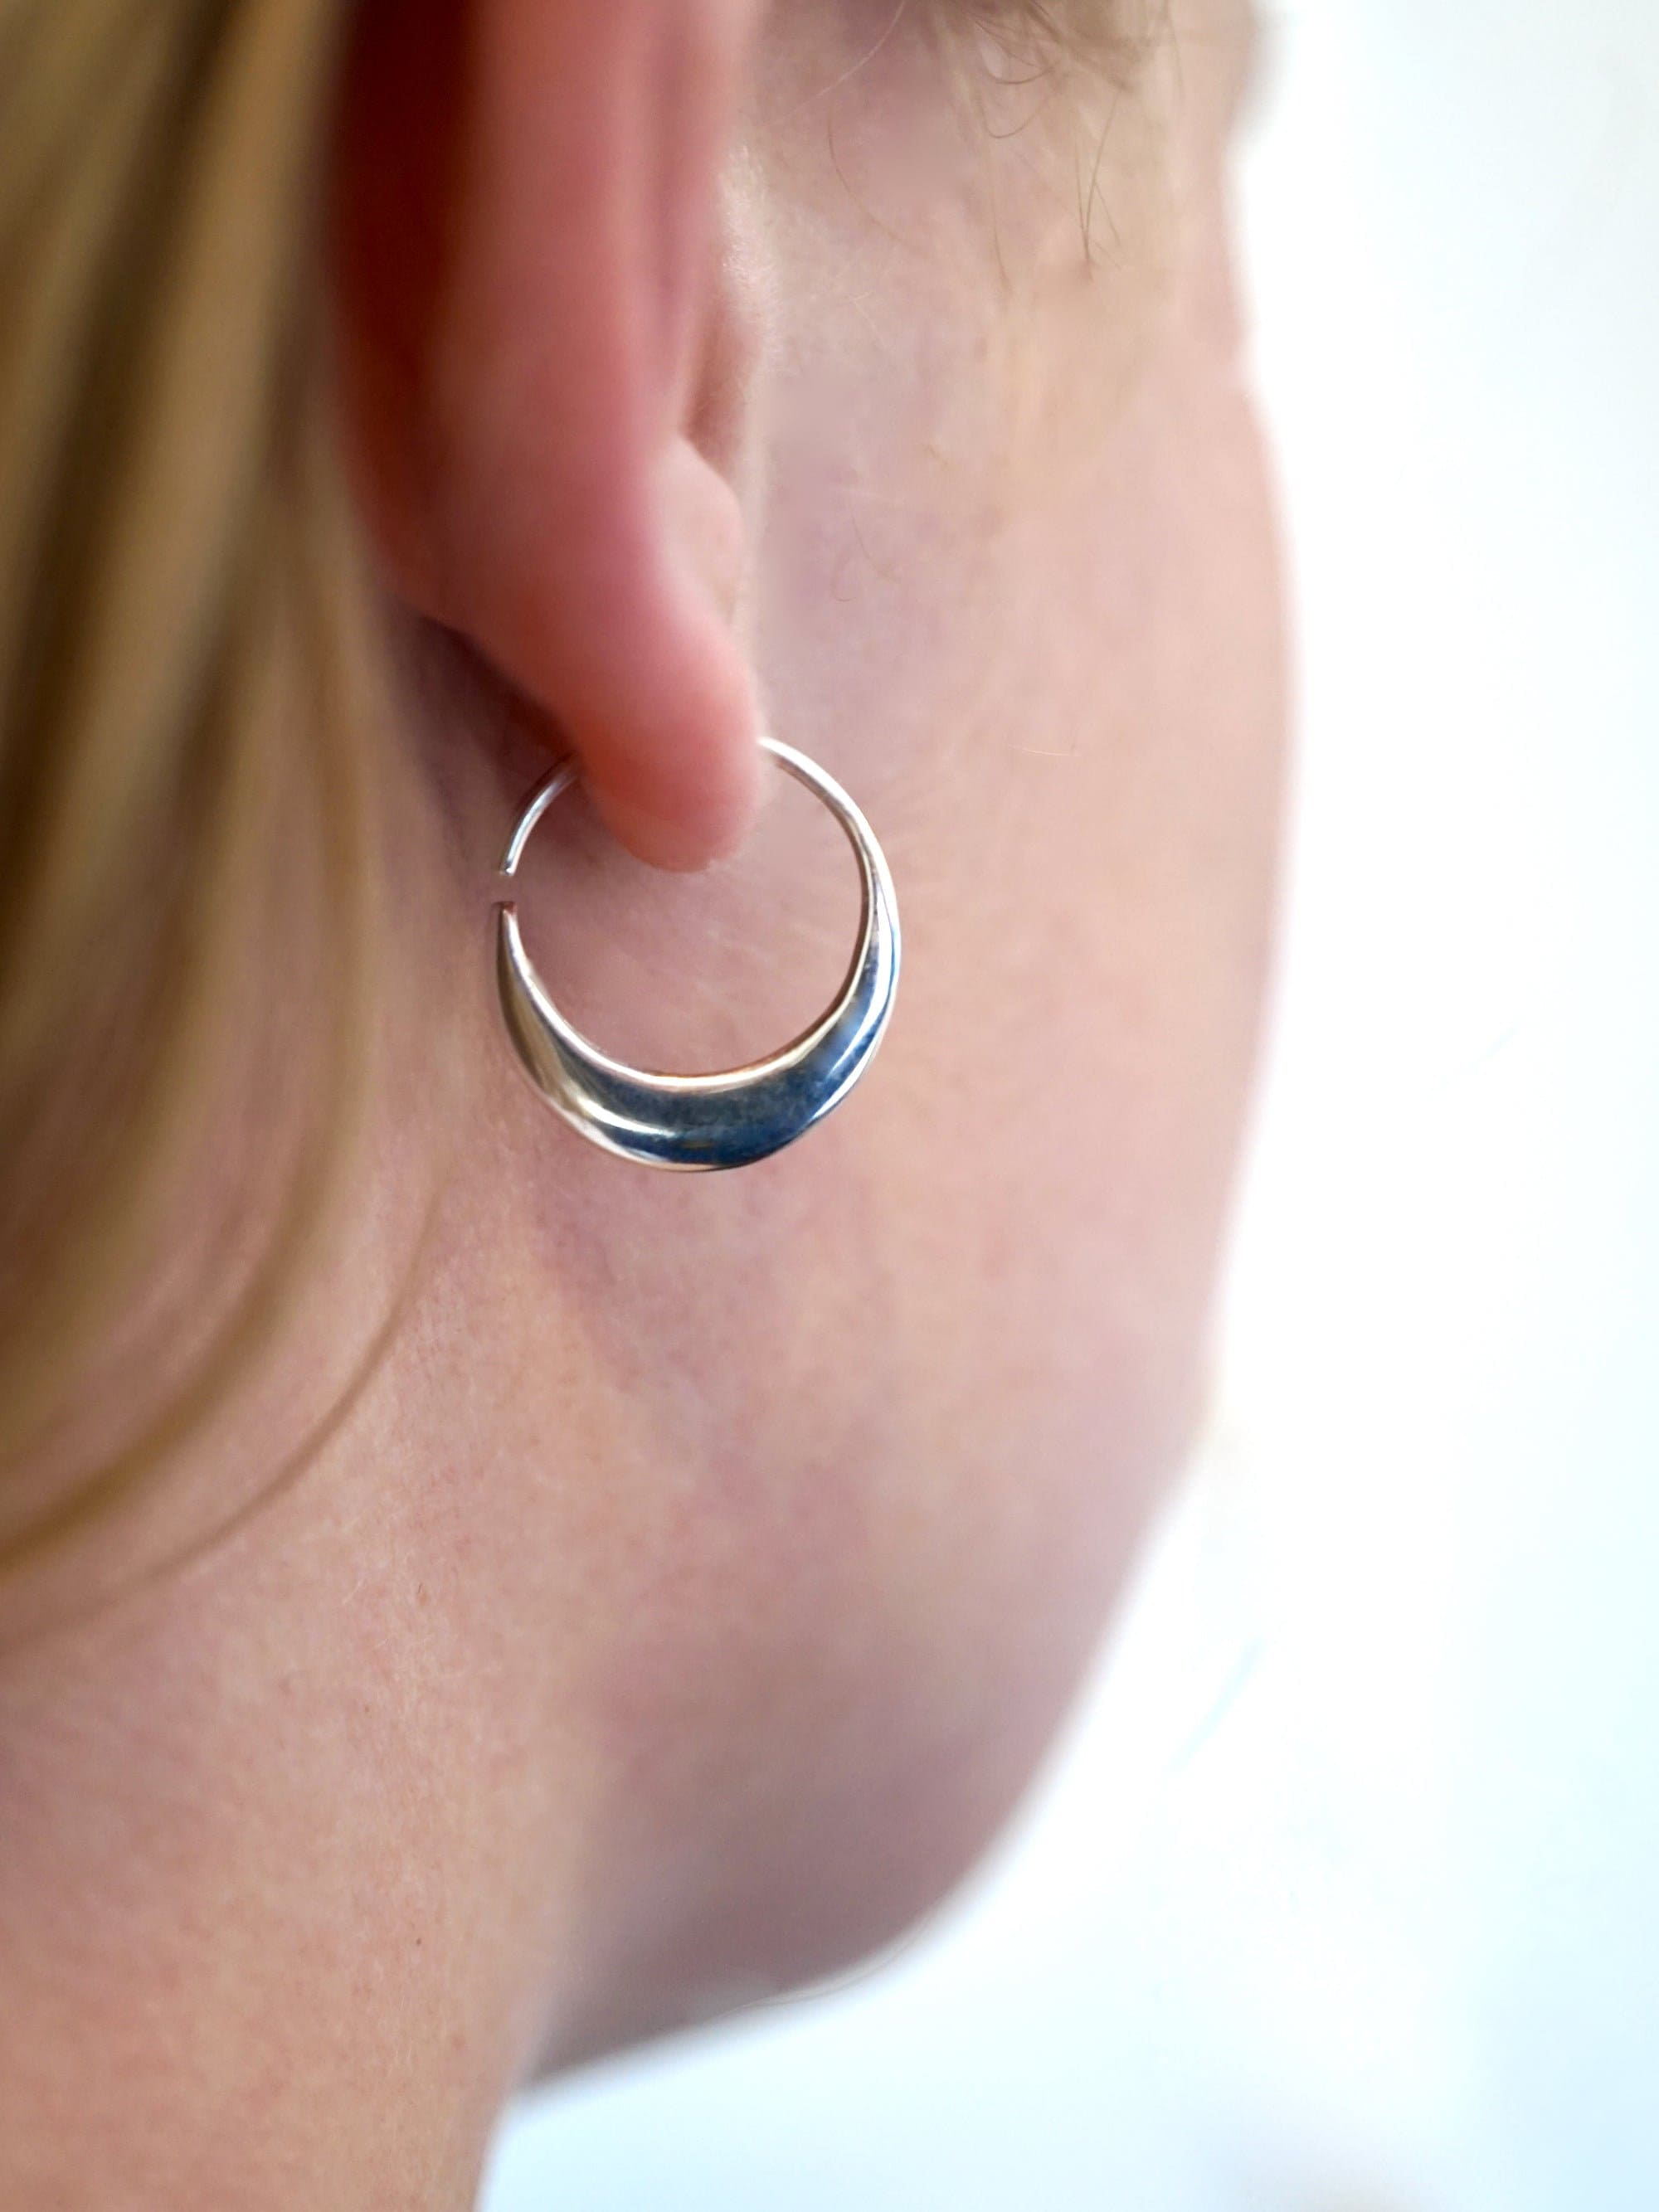 Crescent Moon Hoops 14mm - Solid Sterling Silver Earrings - Sleeper Hoops (S260)